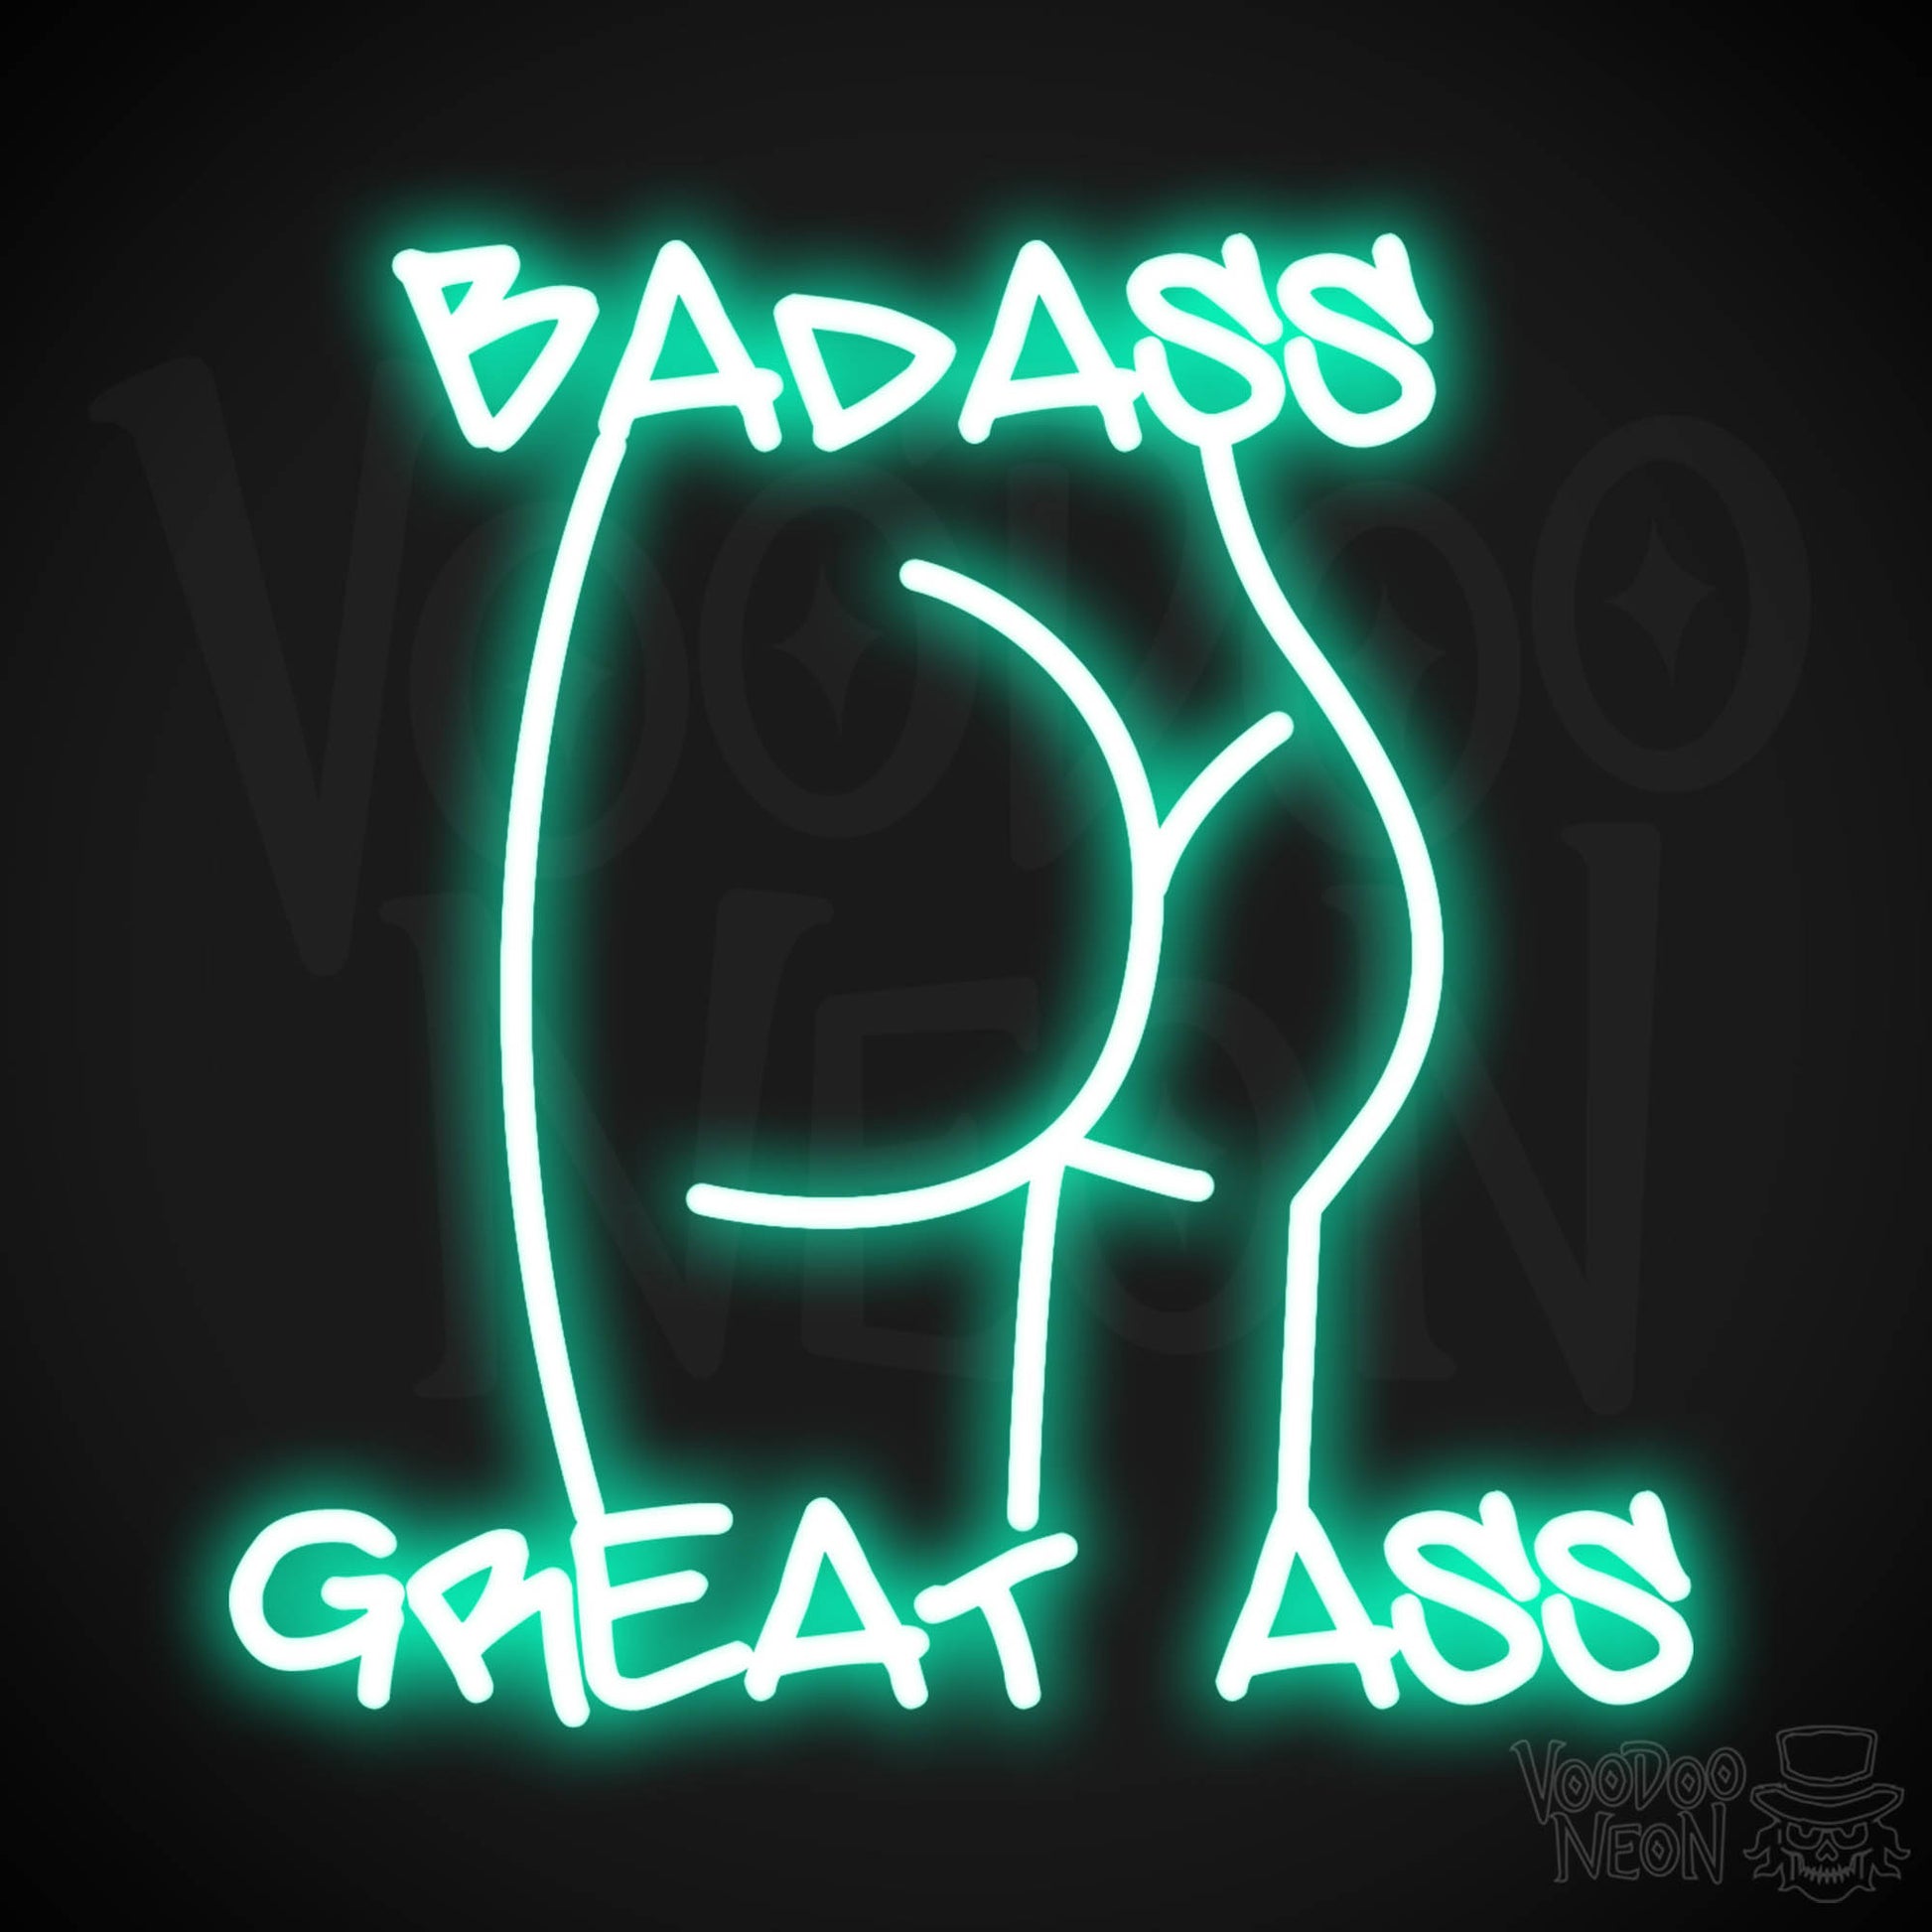 Badass Great Ass Neon Sign - Neon Badass Great Ass Sign - LED Sign - Color Light Green